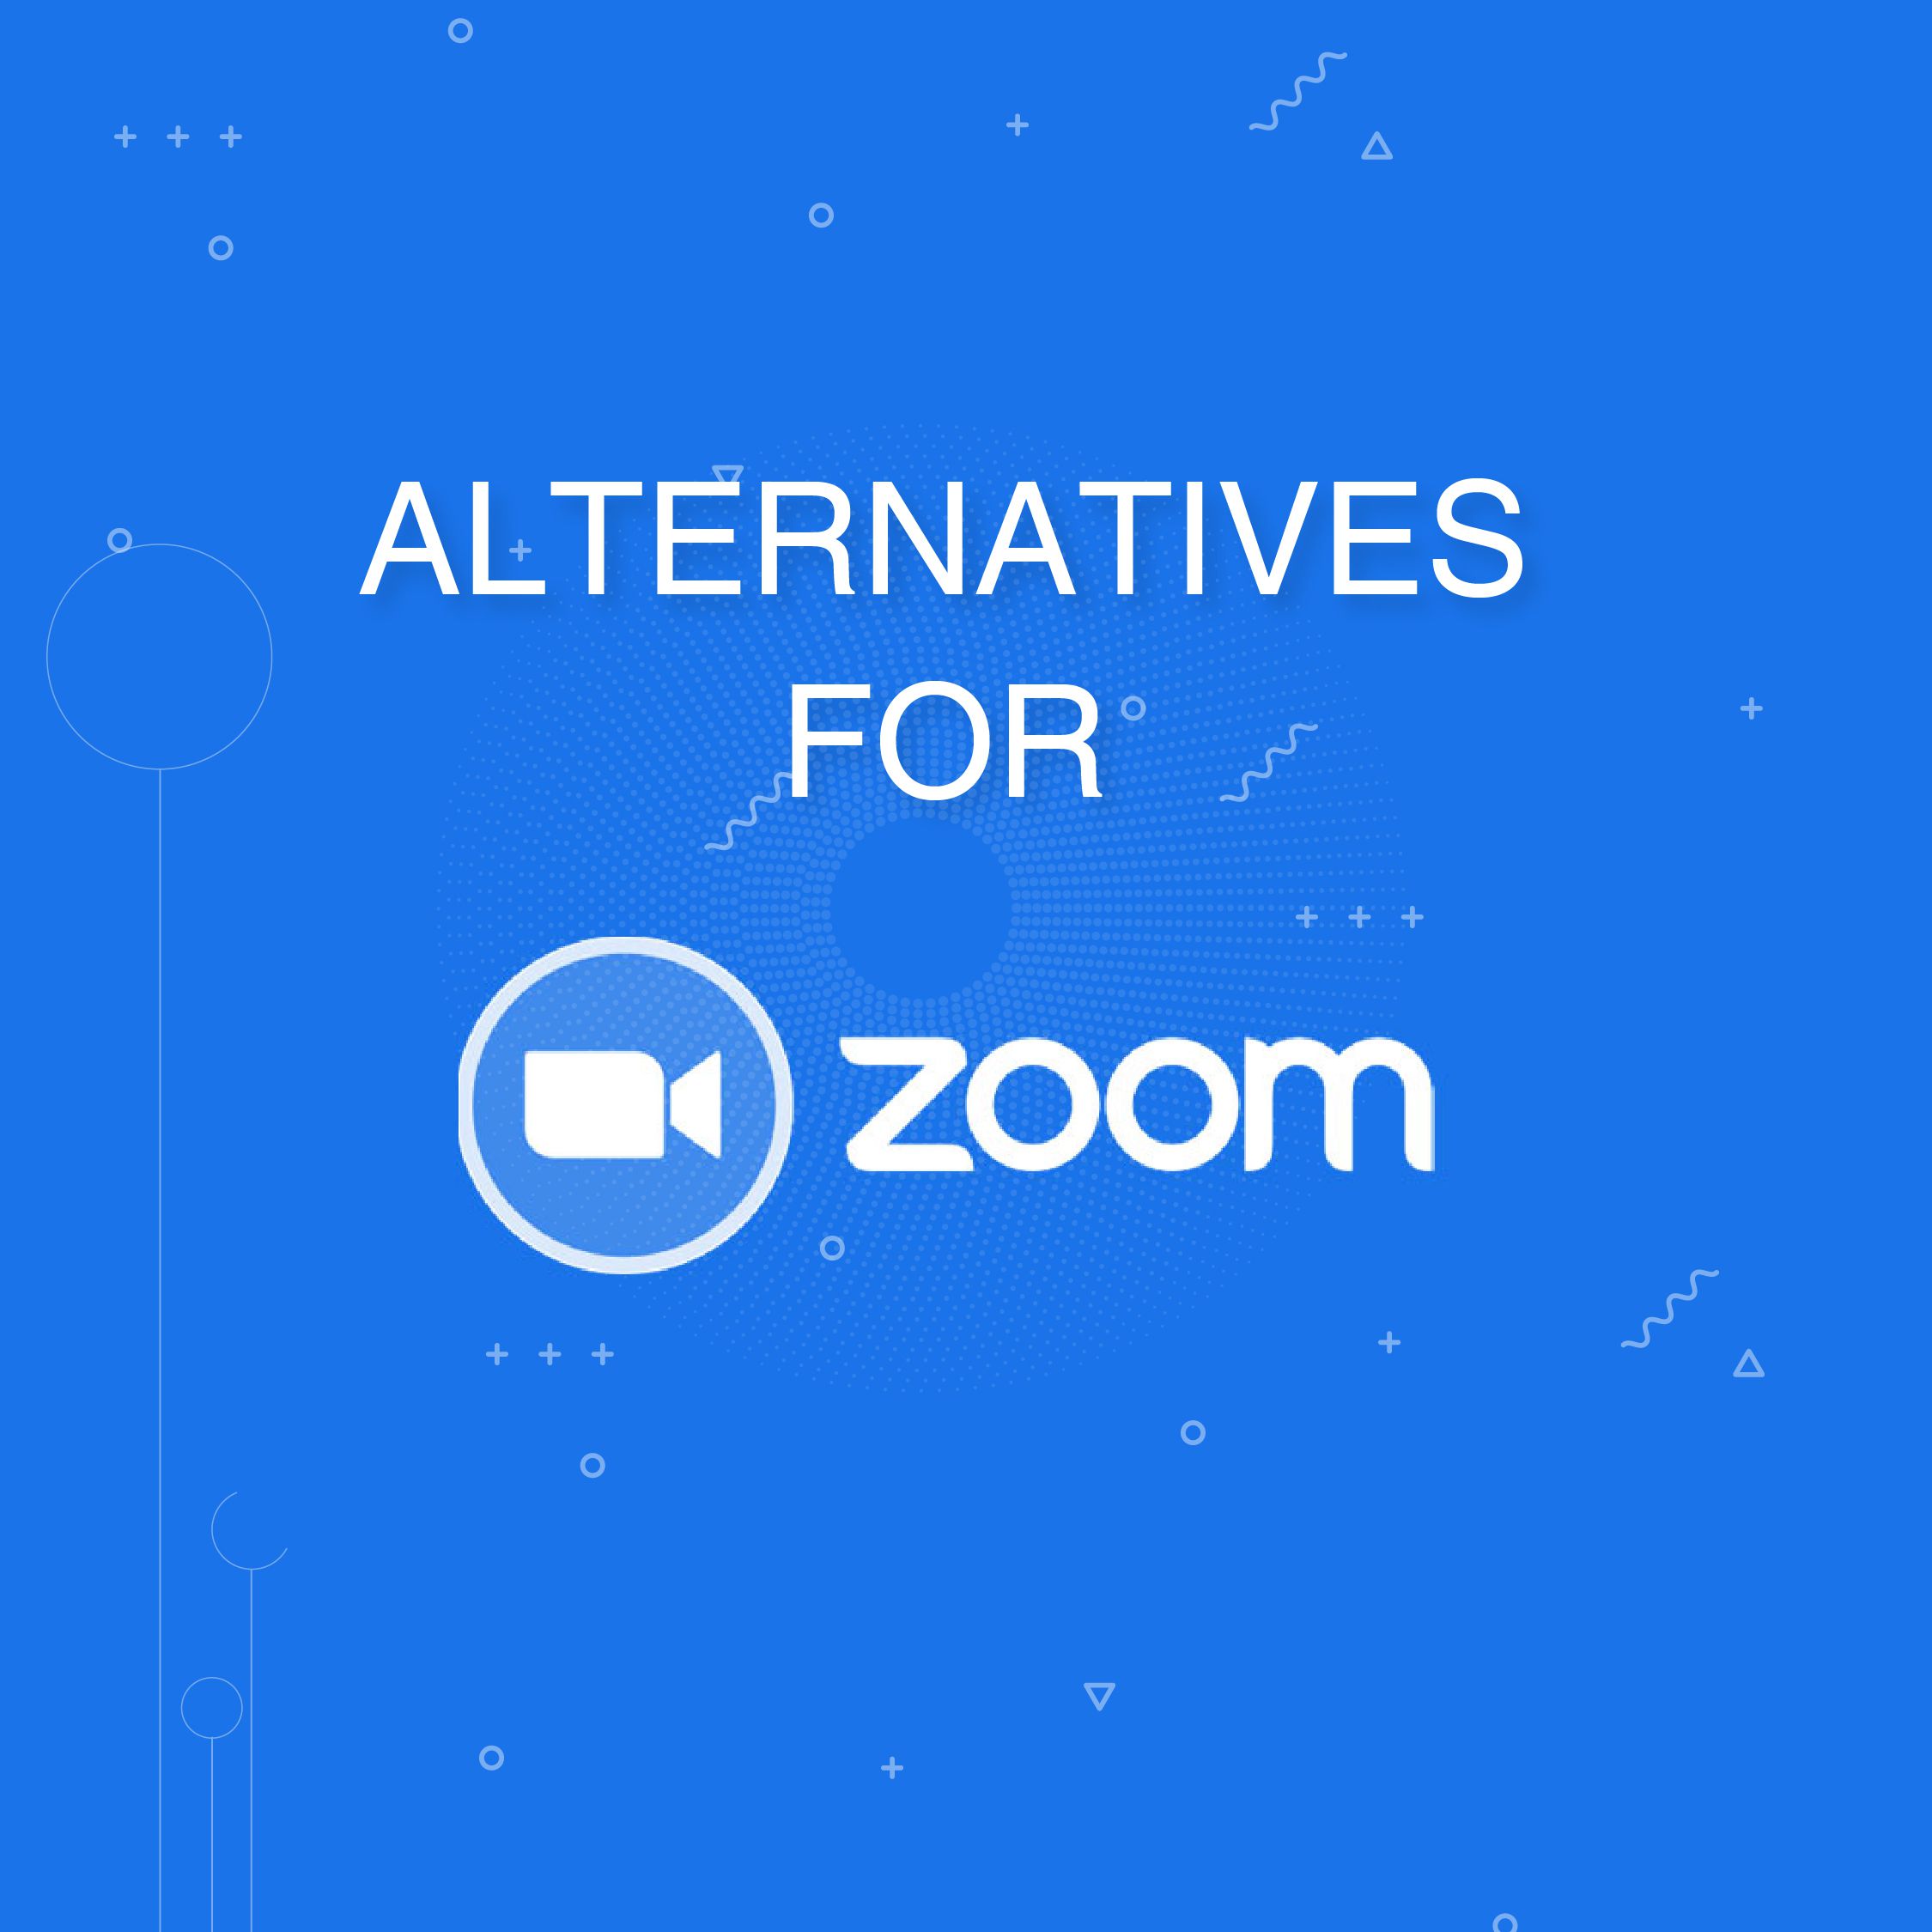 alternatives for zoom app